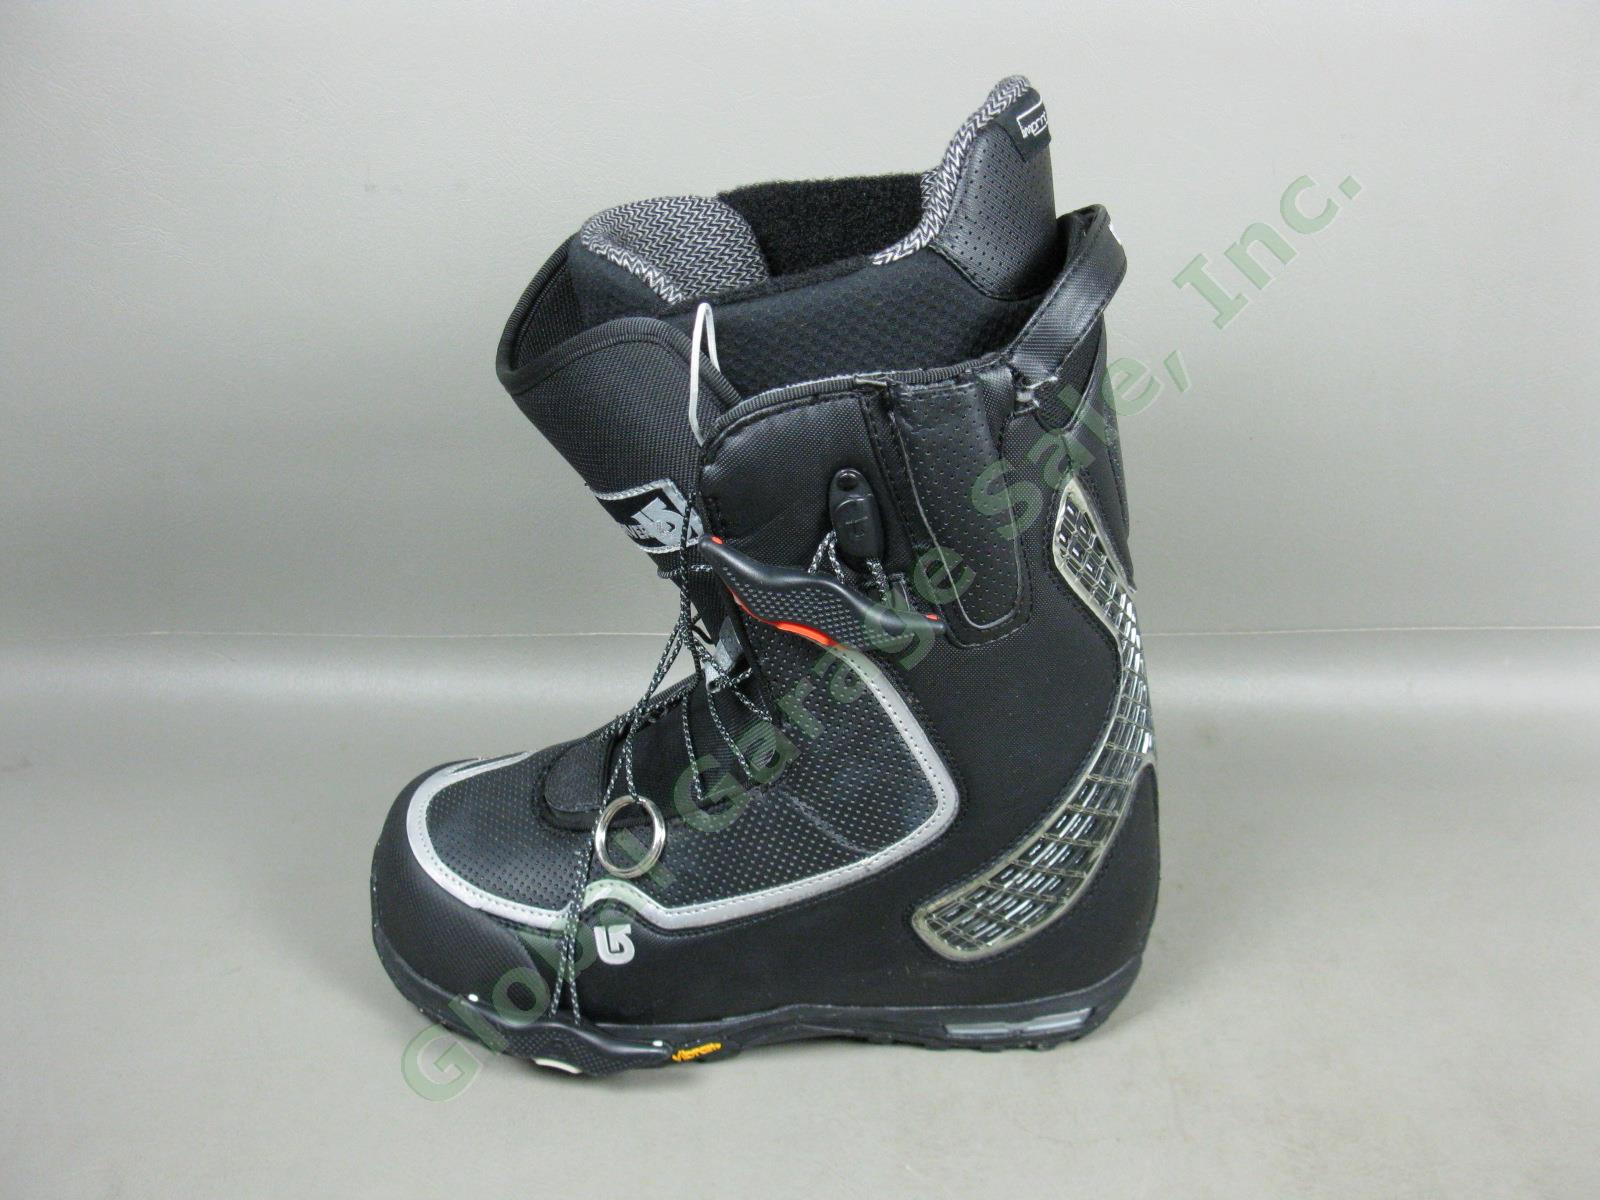 Mens Black/Silver Burton Driver X Snowboard Boots 10.5 W/ Box +$60 Aline Insoles 4